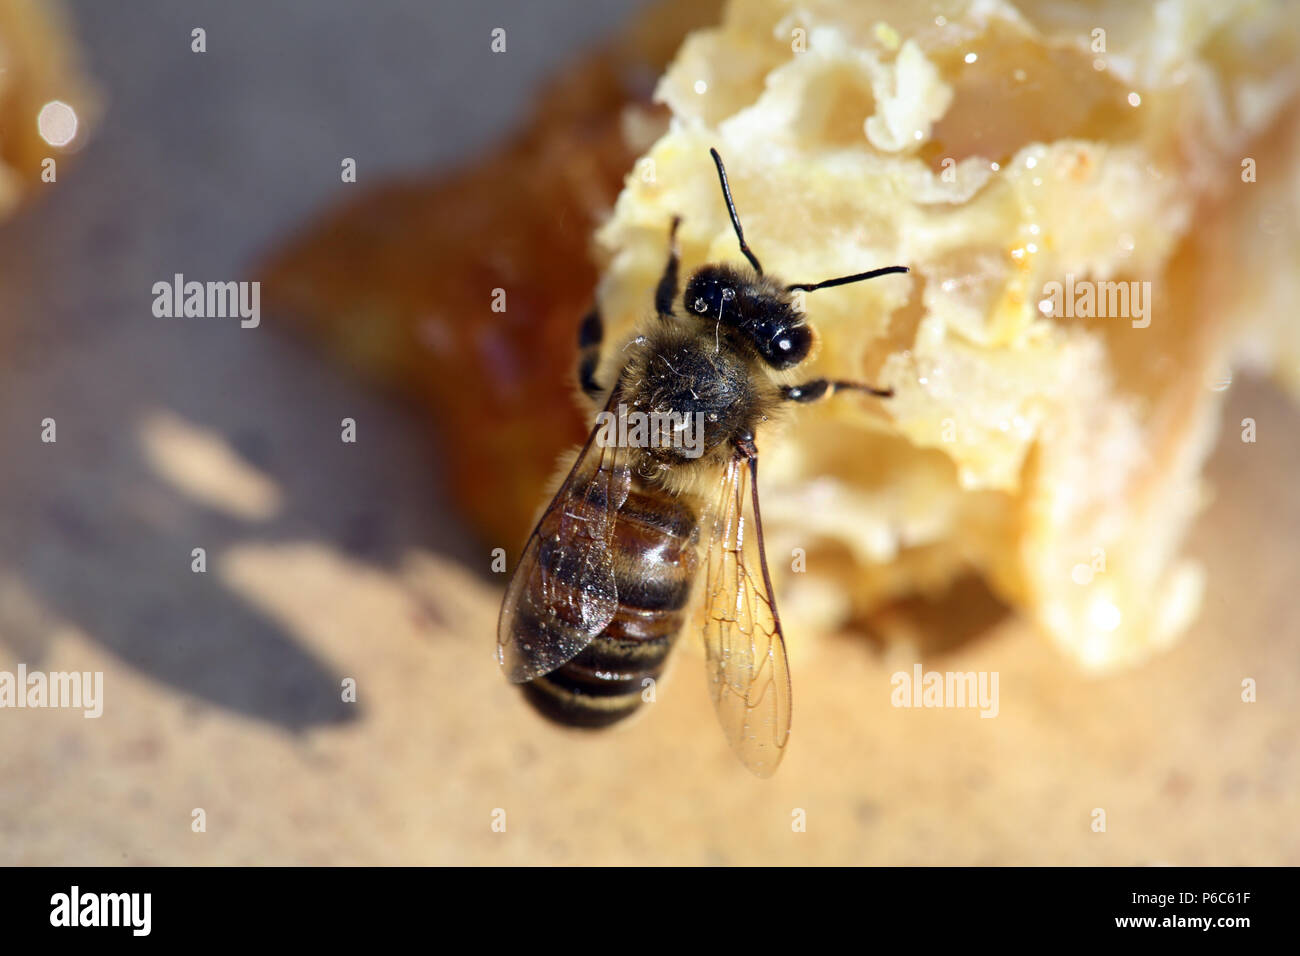 Berlin, Deutschland - Biene saugt Honig von einem gebrochenen Stück Wabe Stockfoto